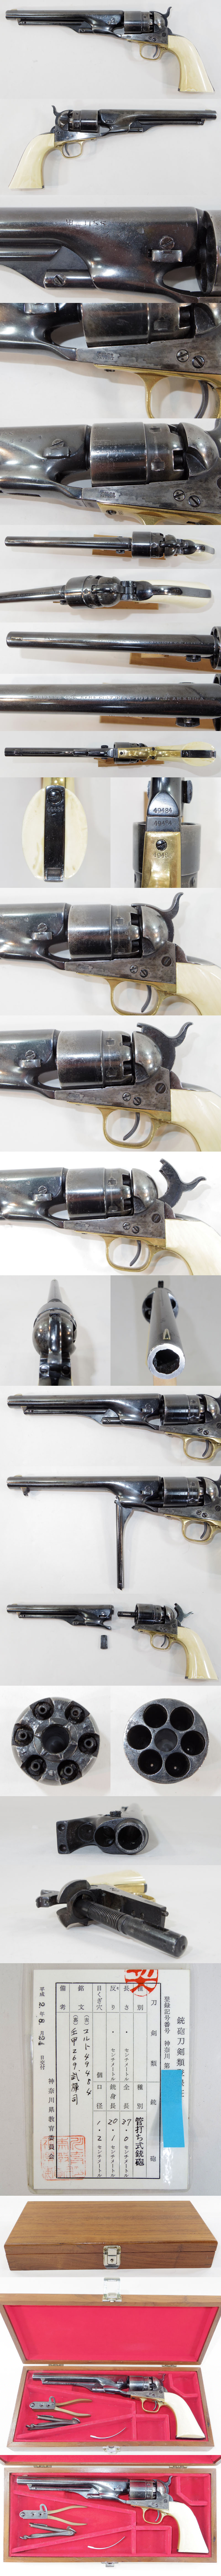 コルトM1860アーミーリボルバー (Colt M1860 Army Revolver)6連発リボルバー管打銃各部分画像